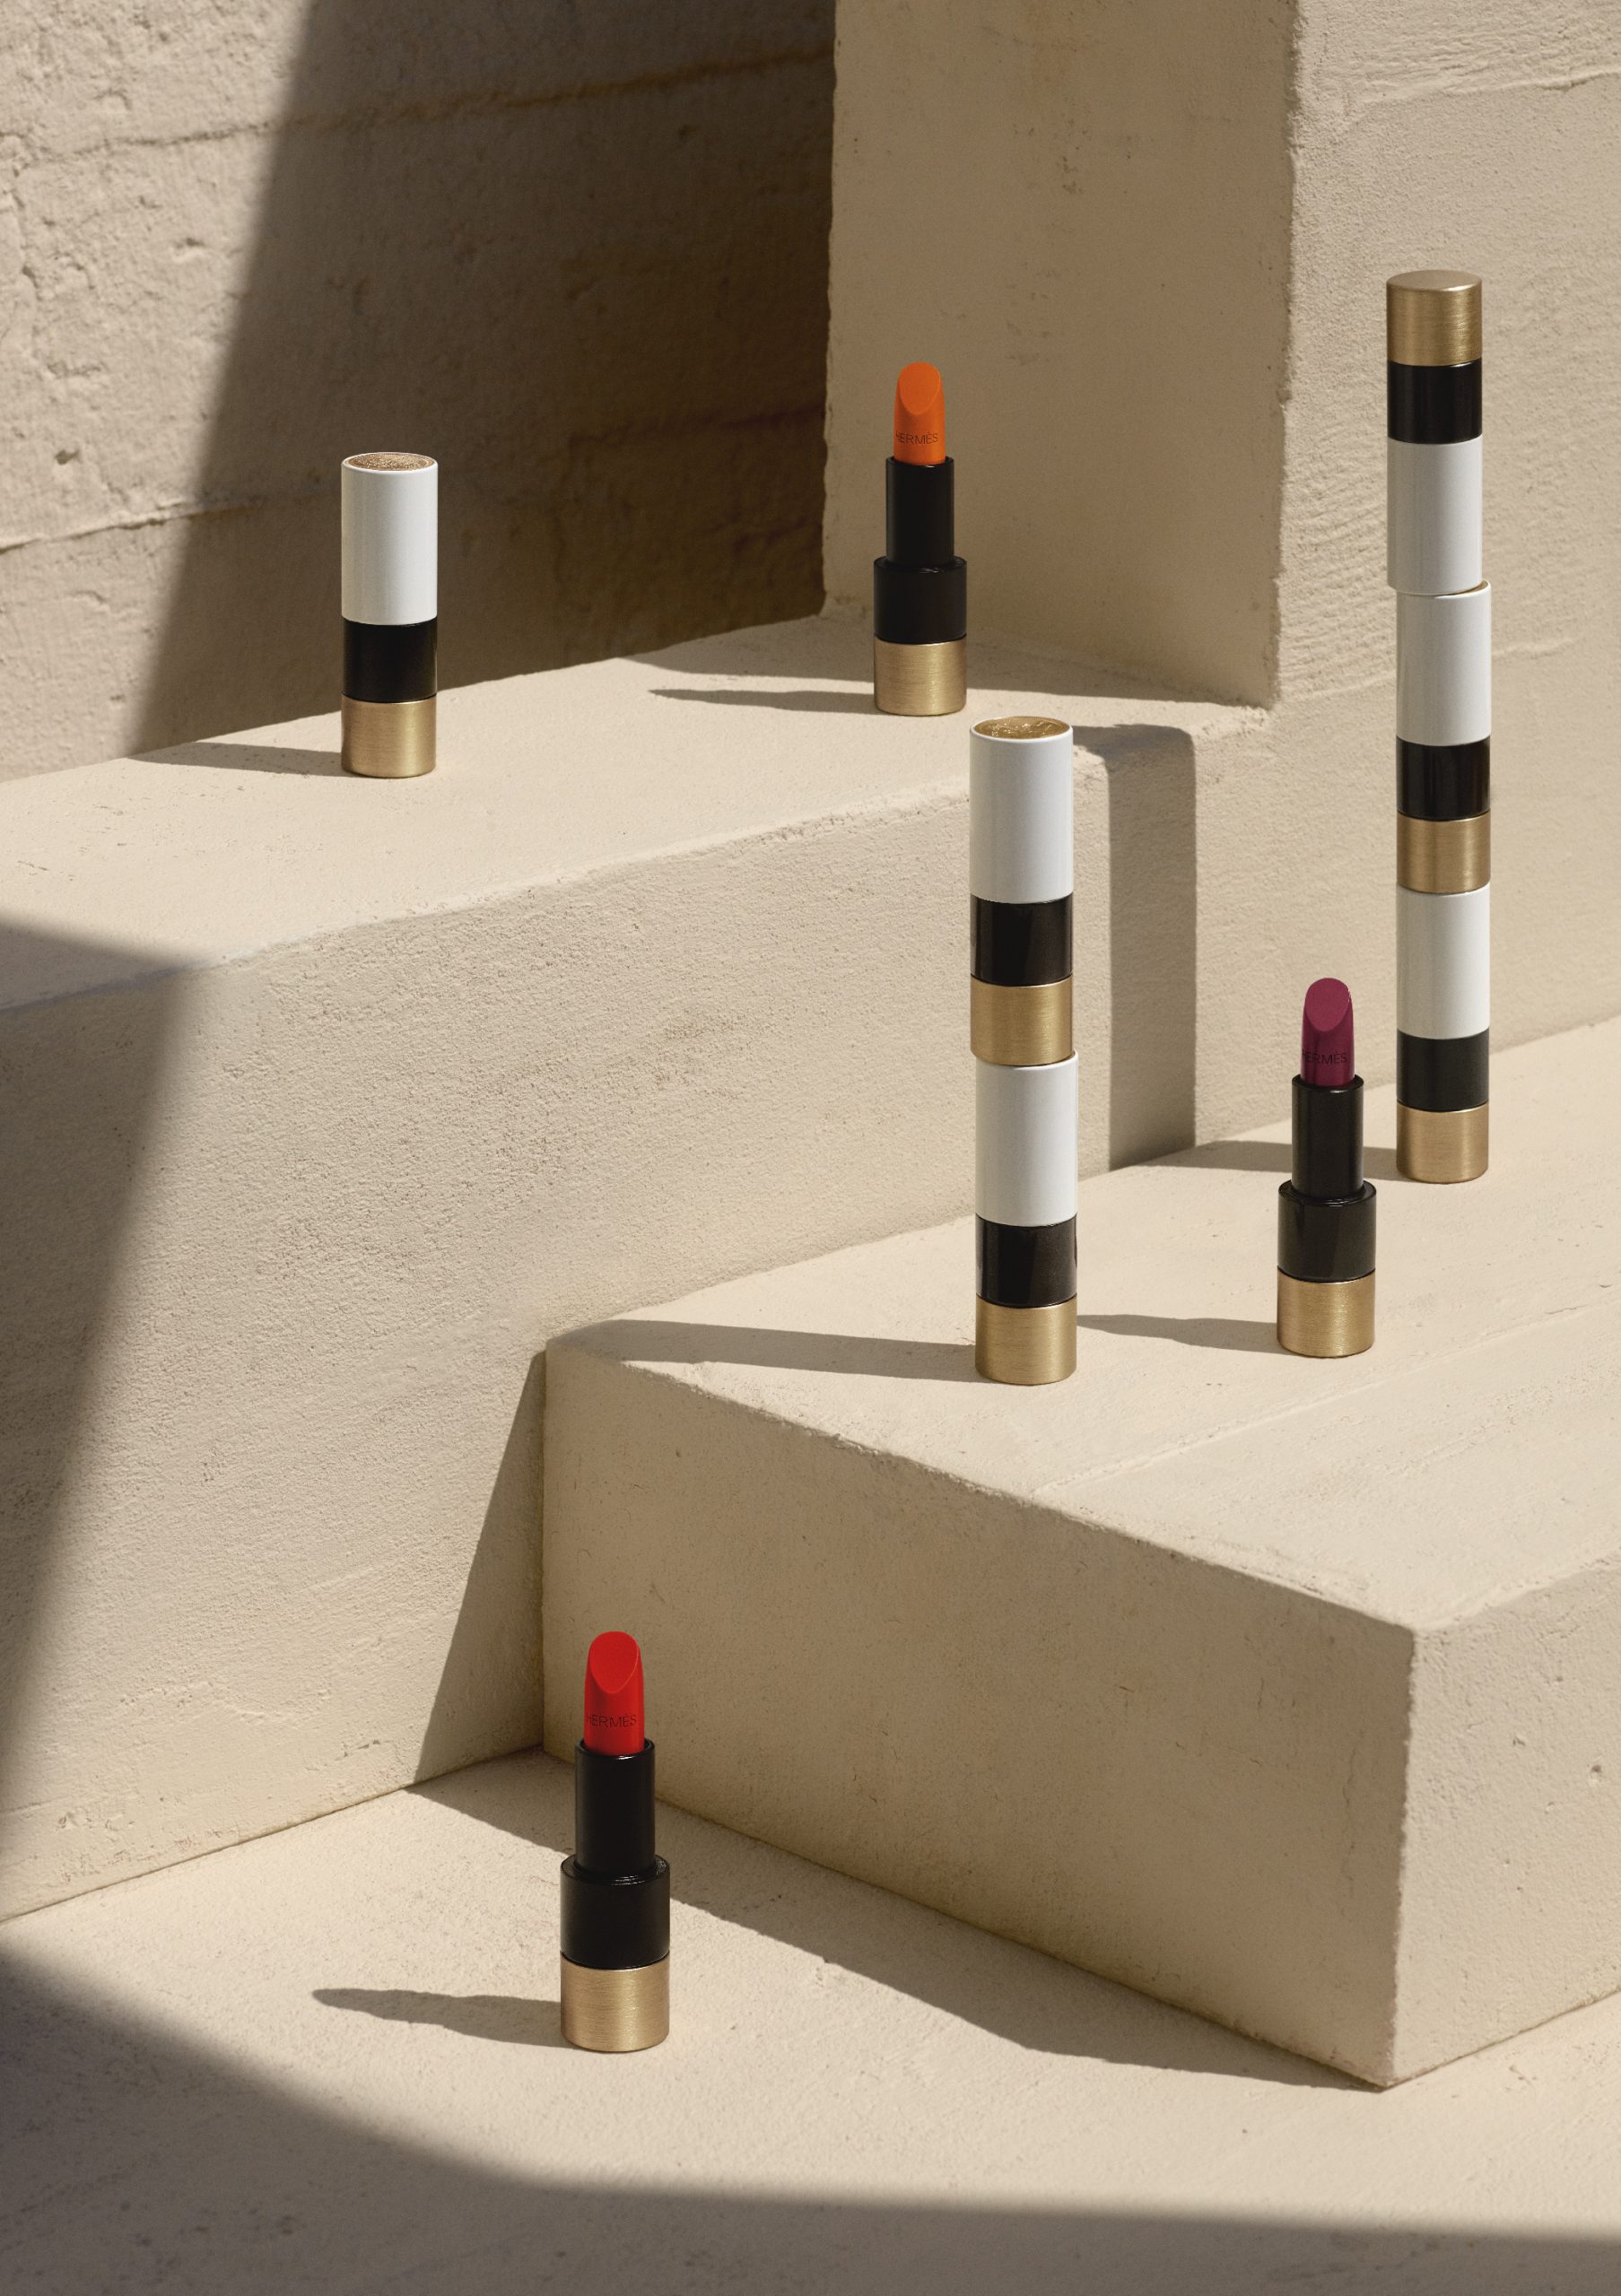 Ο Hermès κυκλοφορεί την πρώτη σειρά με προϊόντα make-up